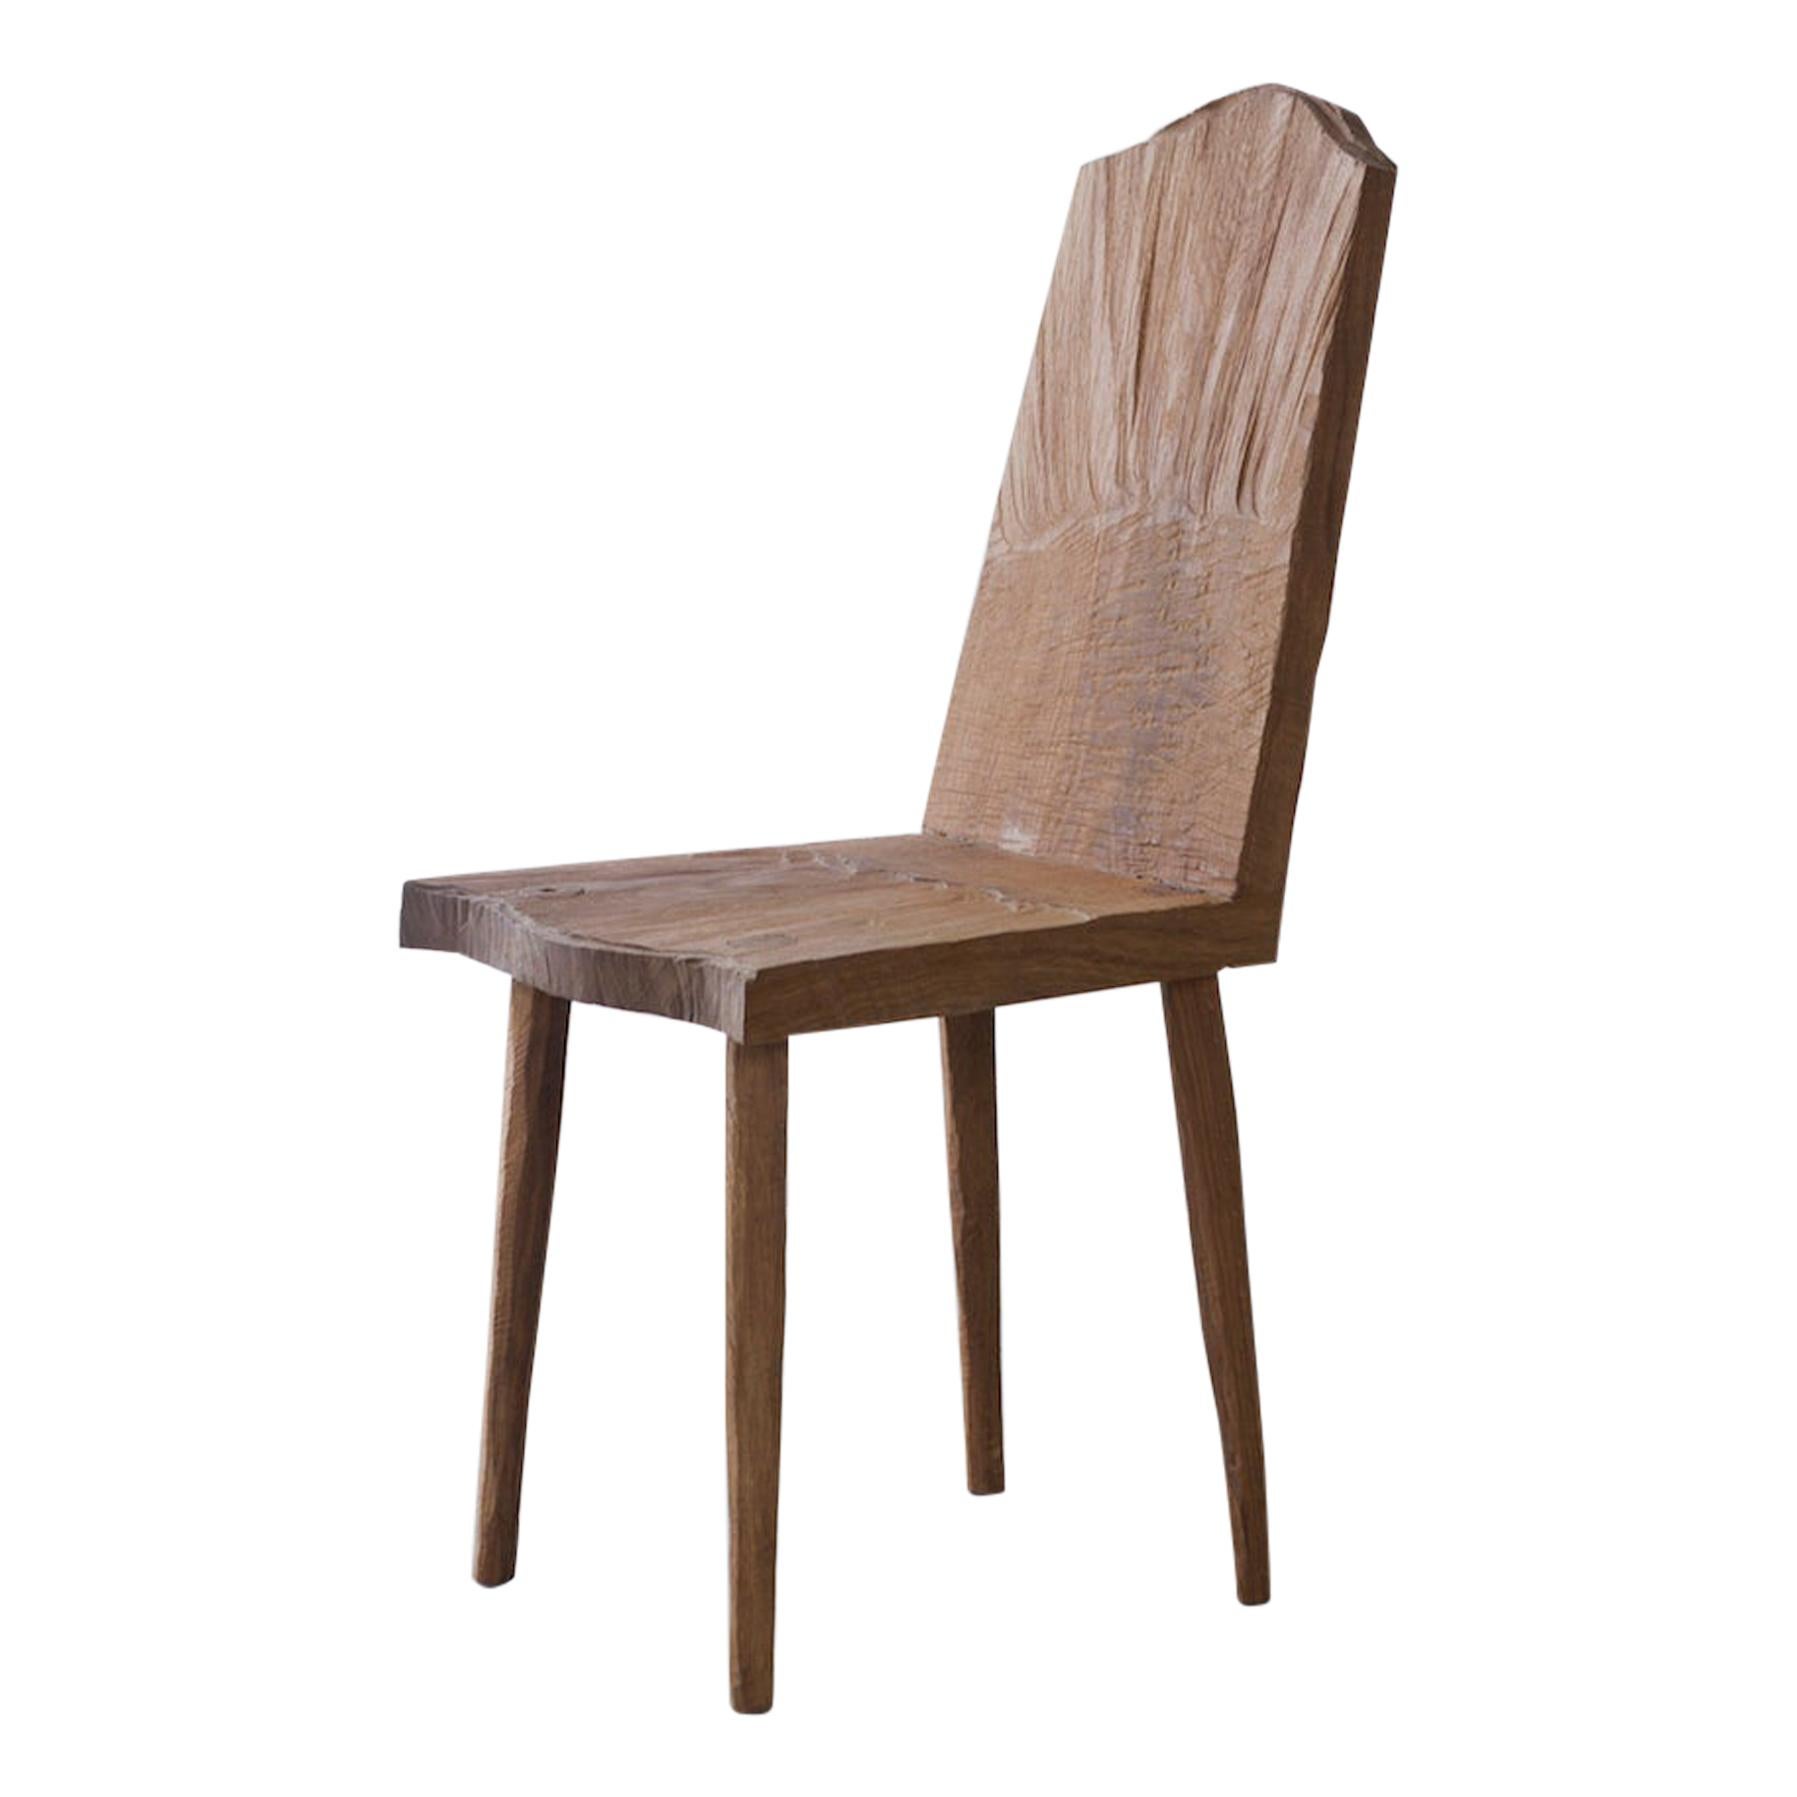 Sculpted Chair N1 in Solid Oak Wood